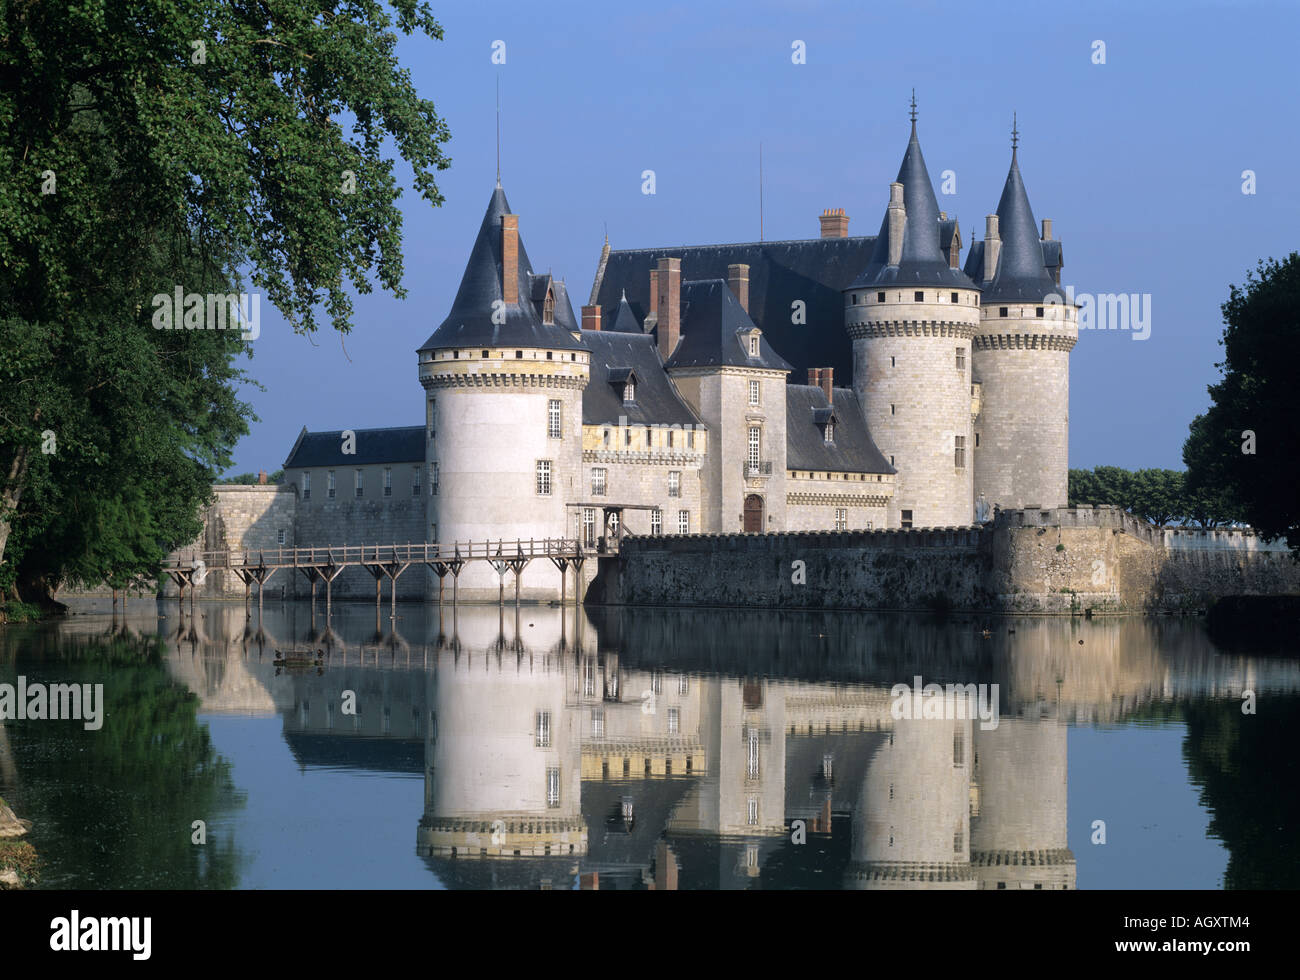 Château de Sully, de la Loire, France Banque D'Images